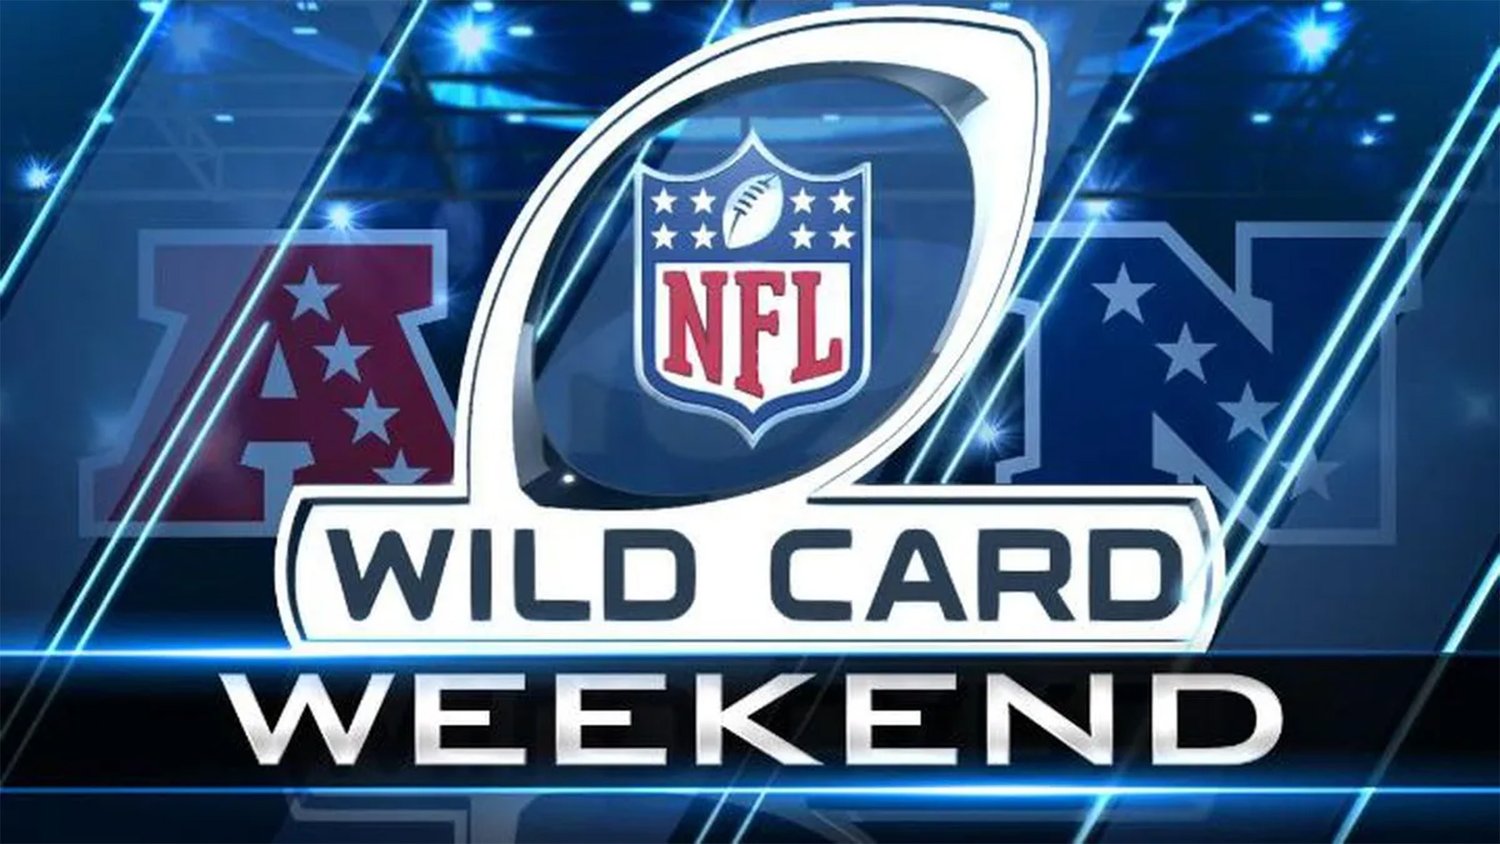 NFL Wildcard Weekend Dorrian’s Red Hand (New York City)